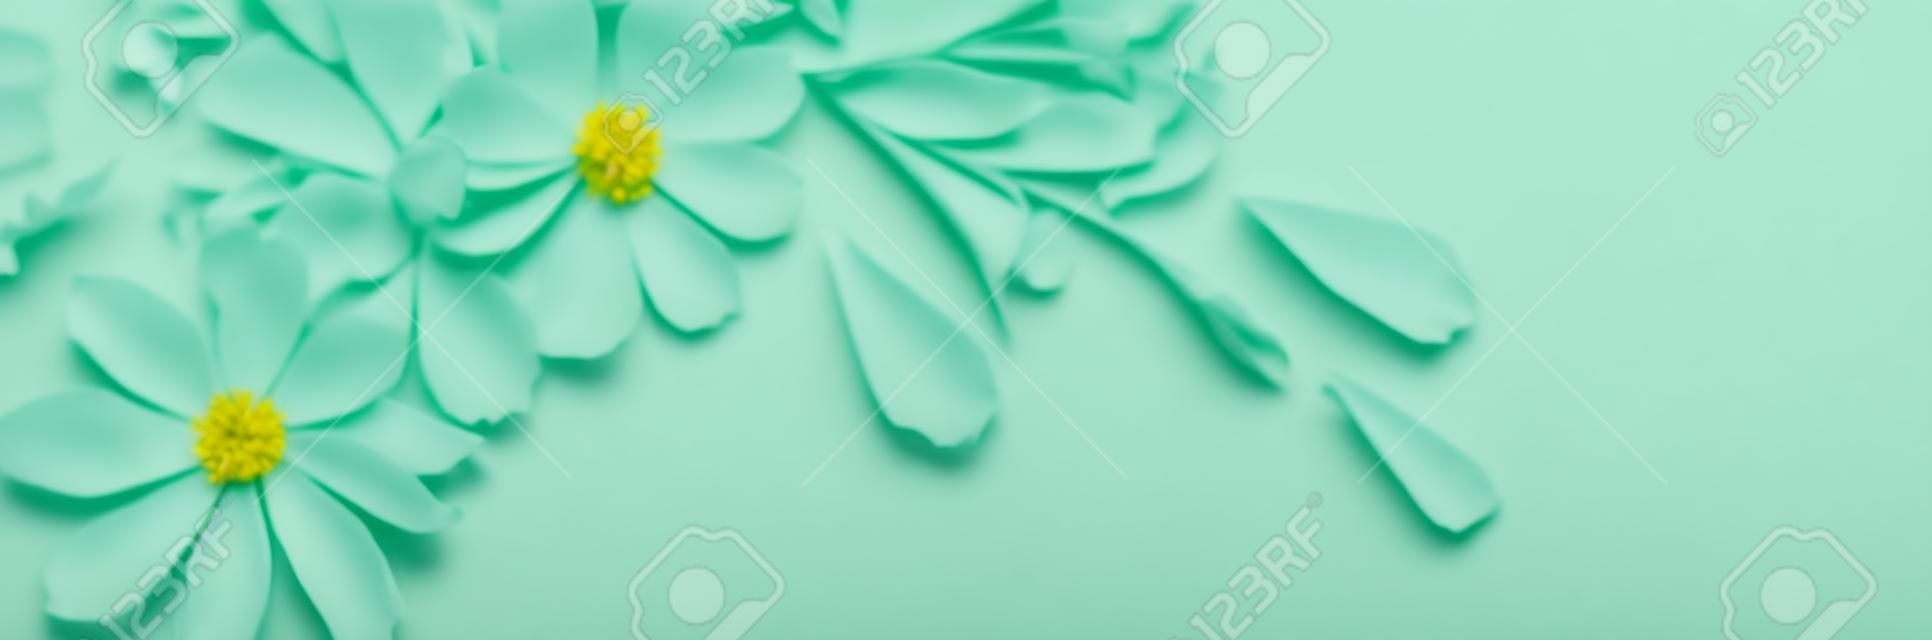 weiße Blumen auf grünem Papierhintergrund